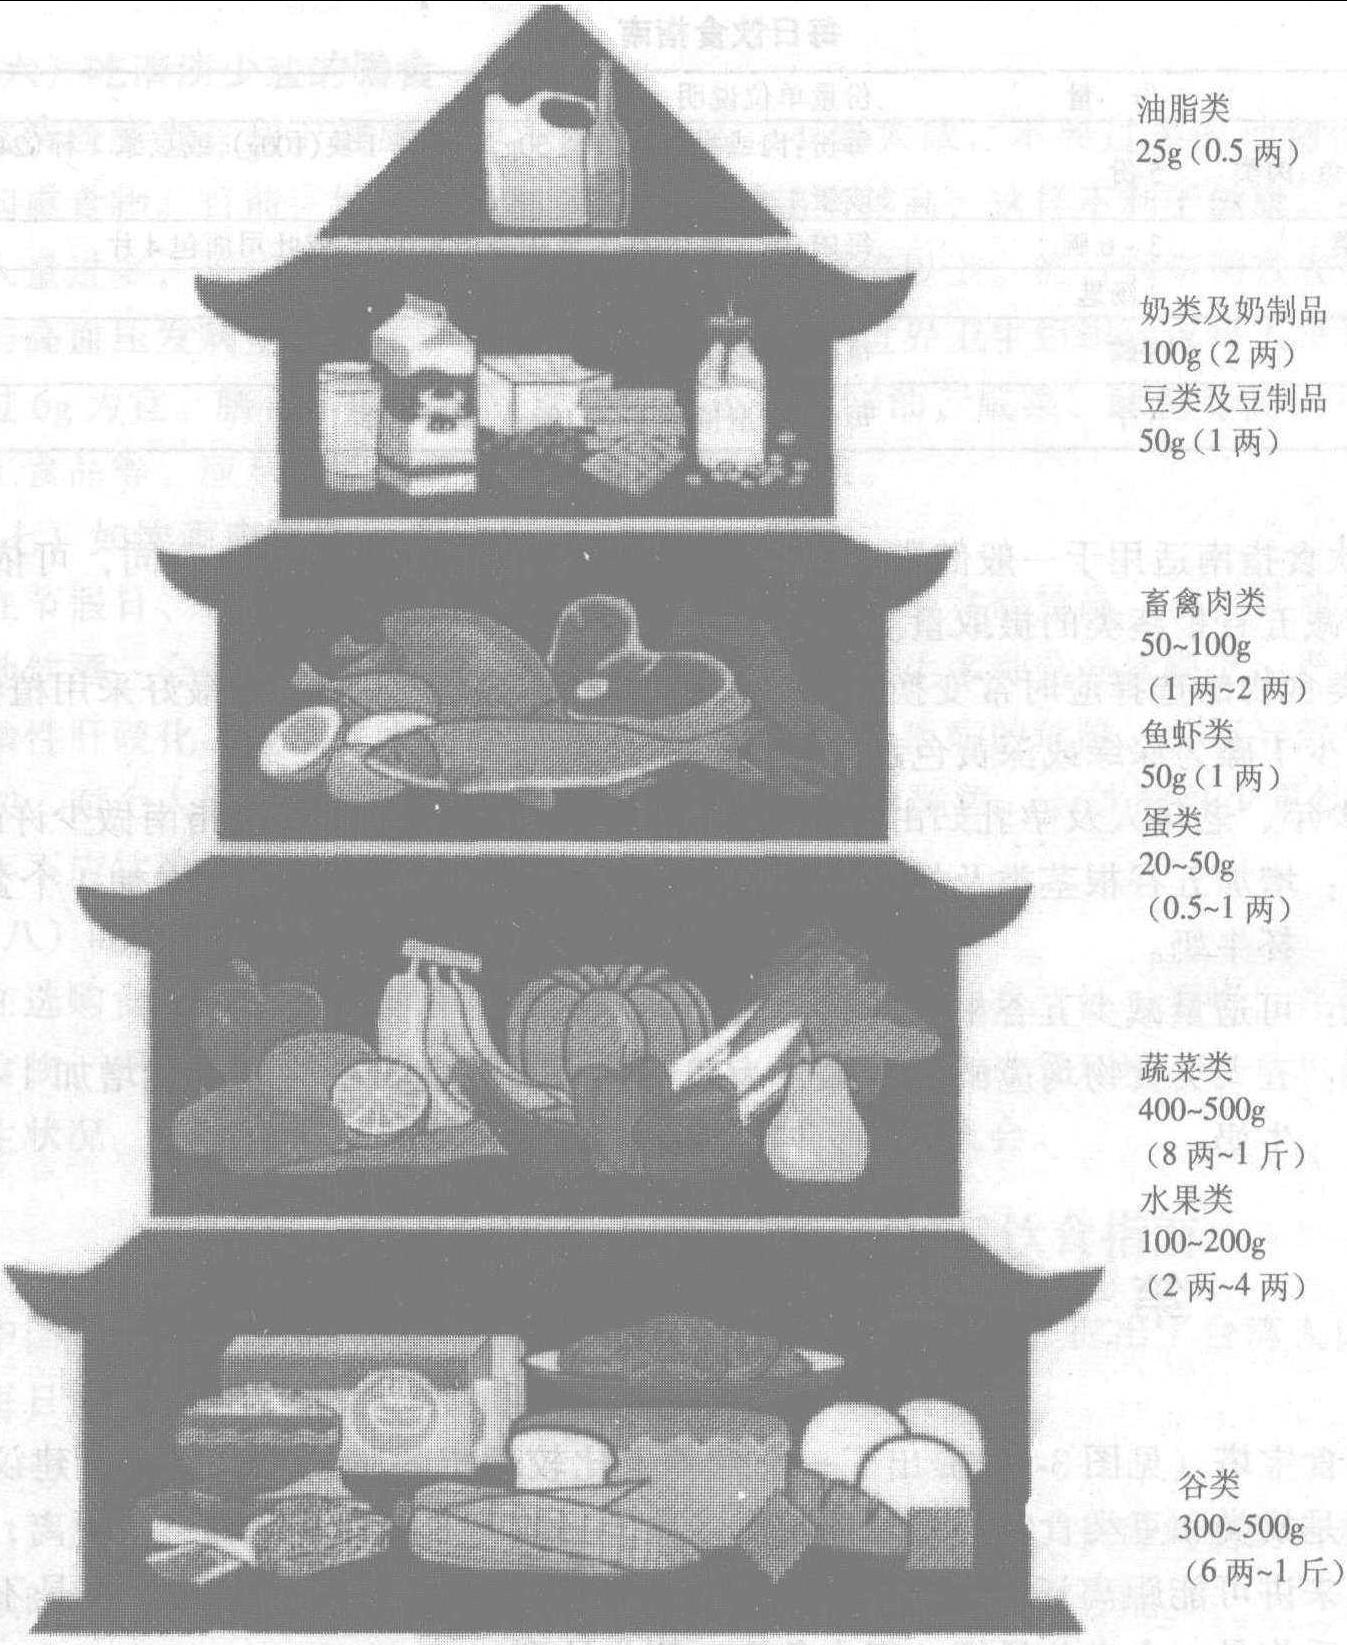 第三节 中国居民平衡膳食宝塔